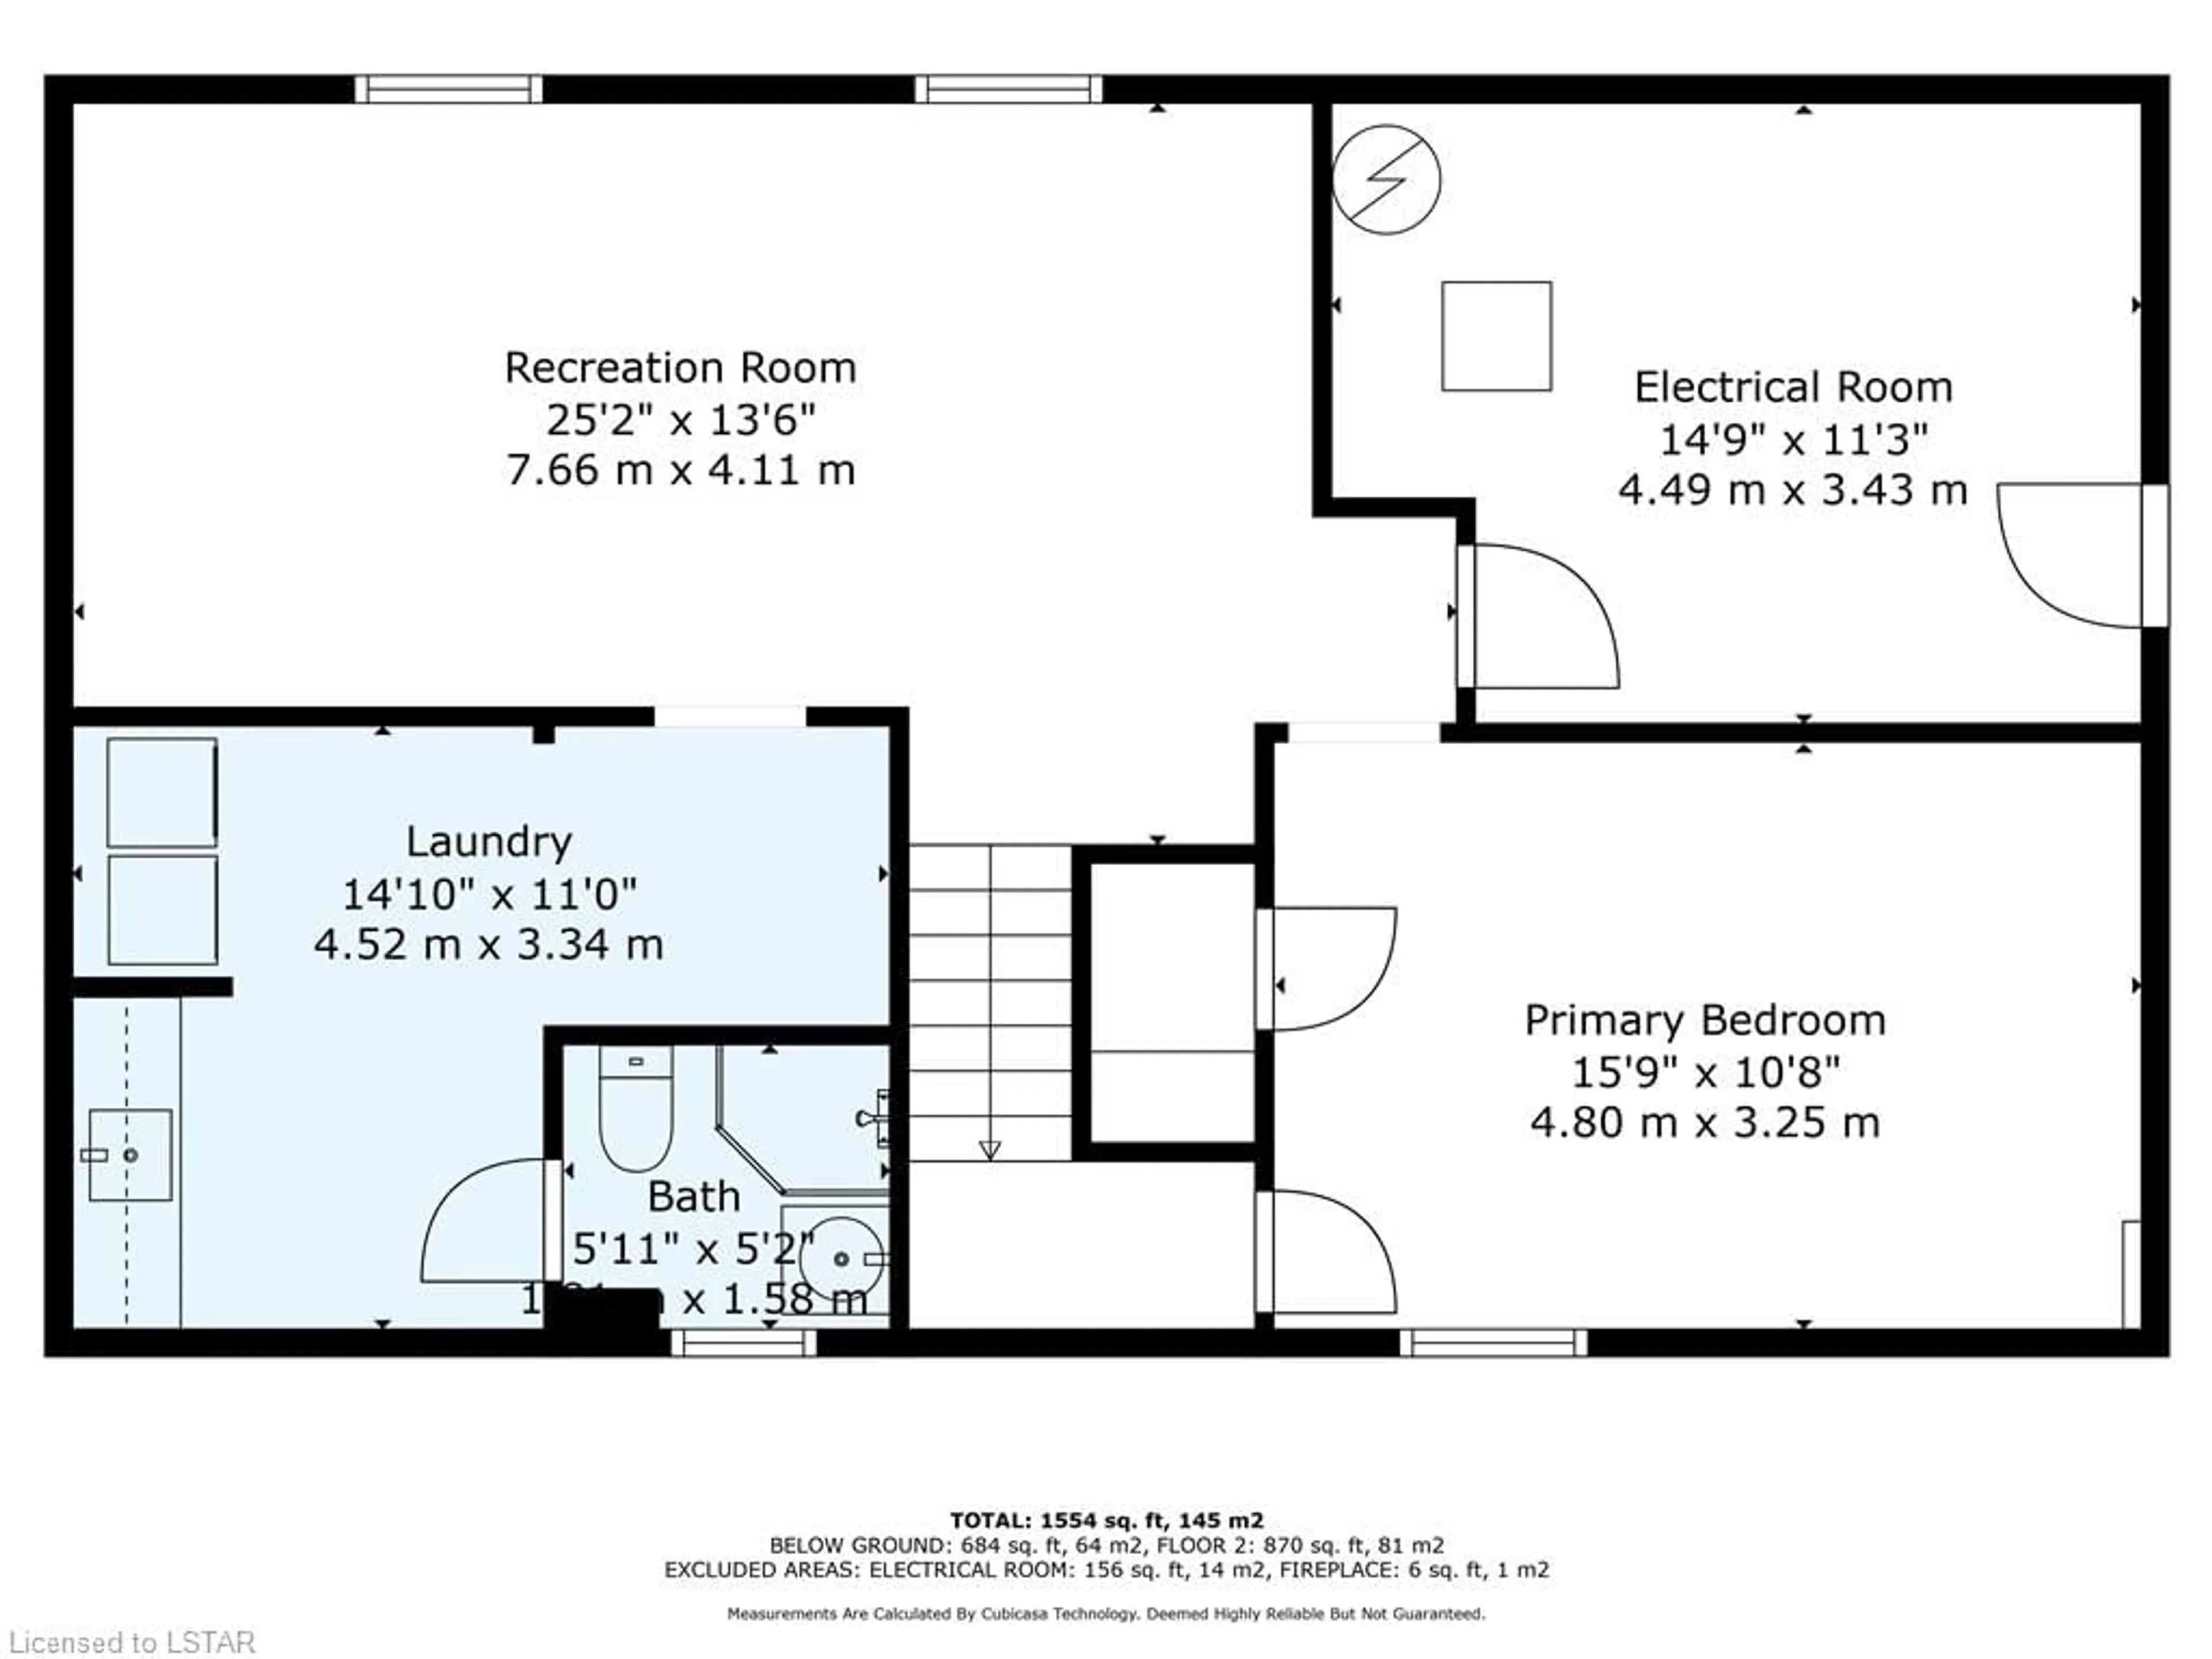 Floor plan for 211 Trowbridge Ave, London Ontario N6J 3M2